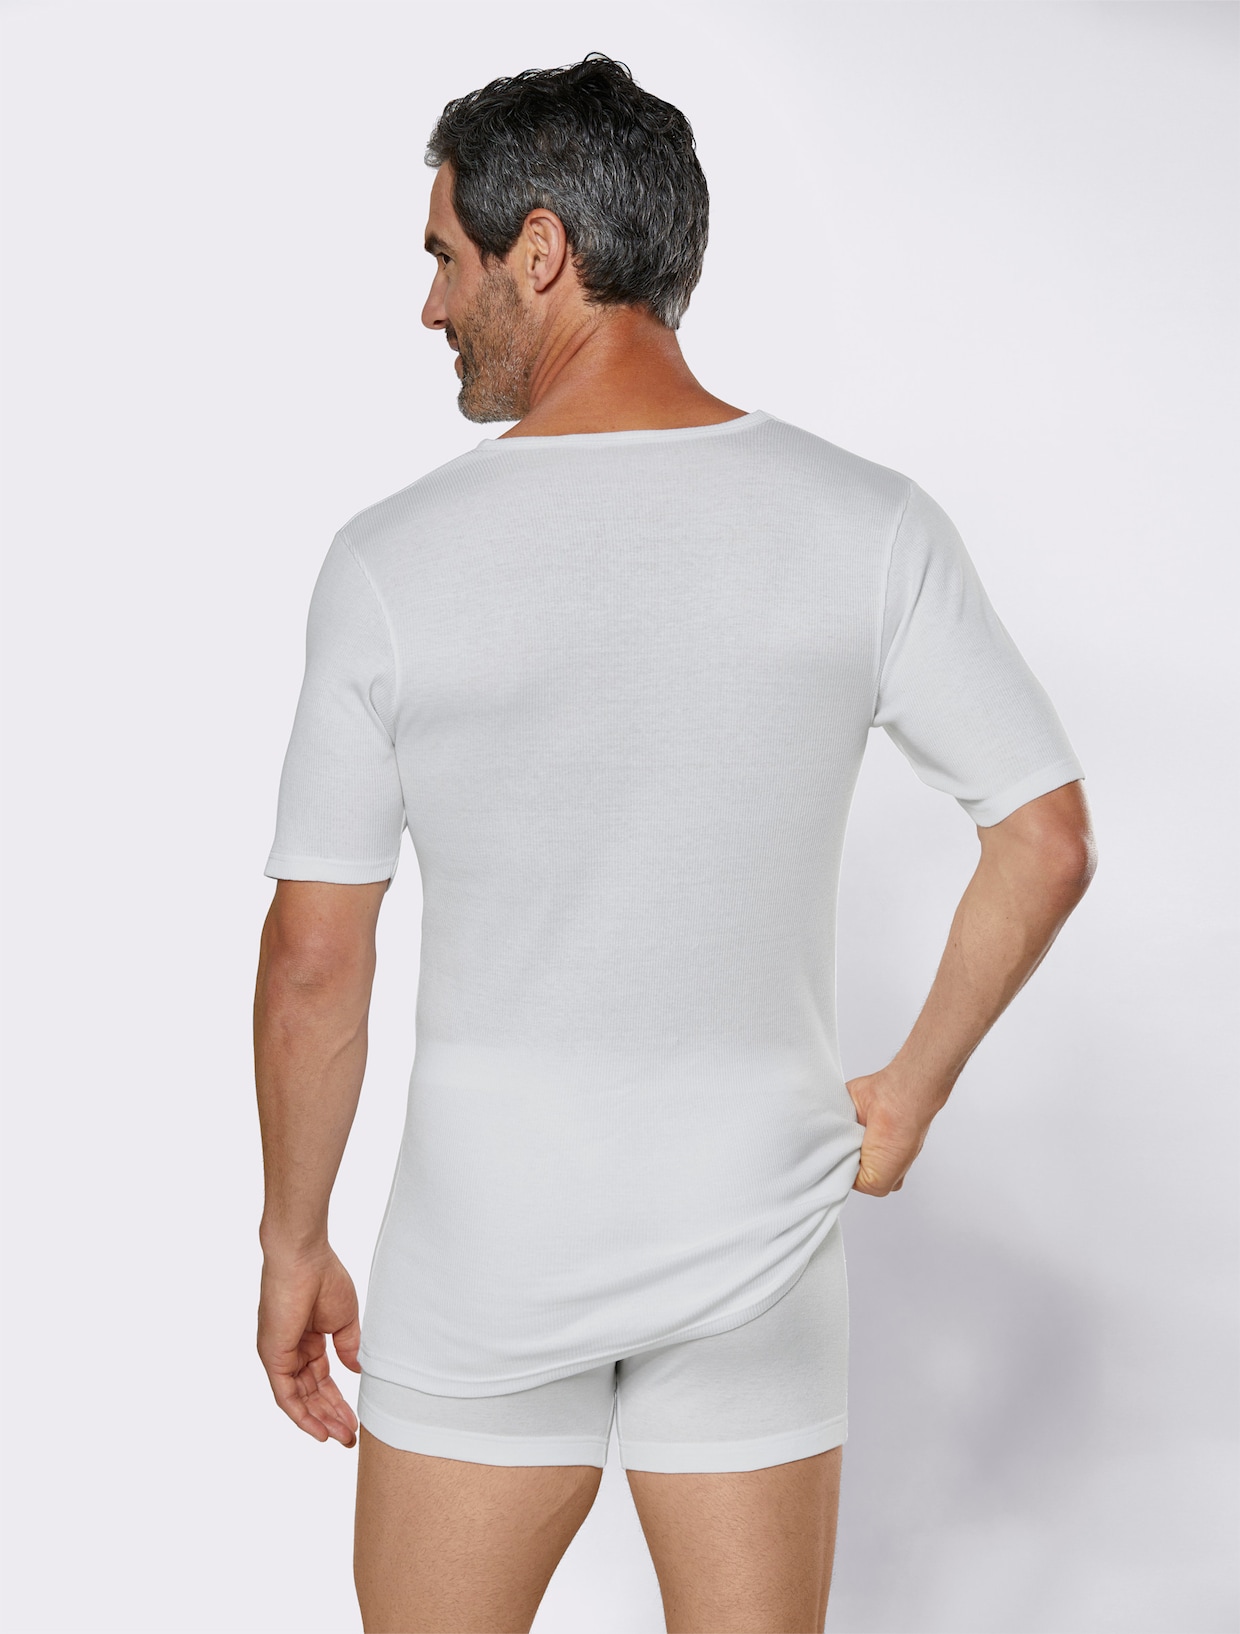 Kumpf Shirt - weiß